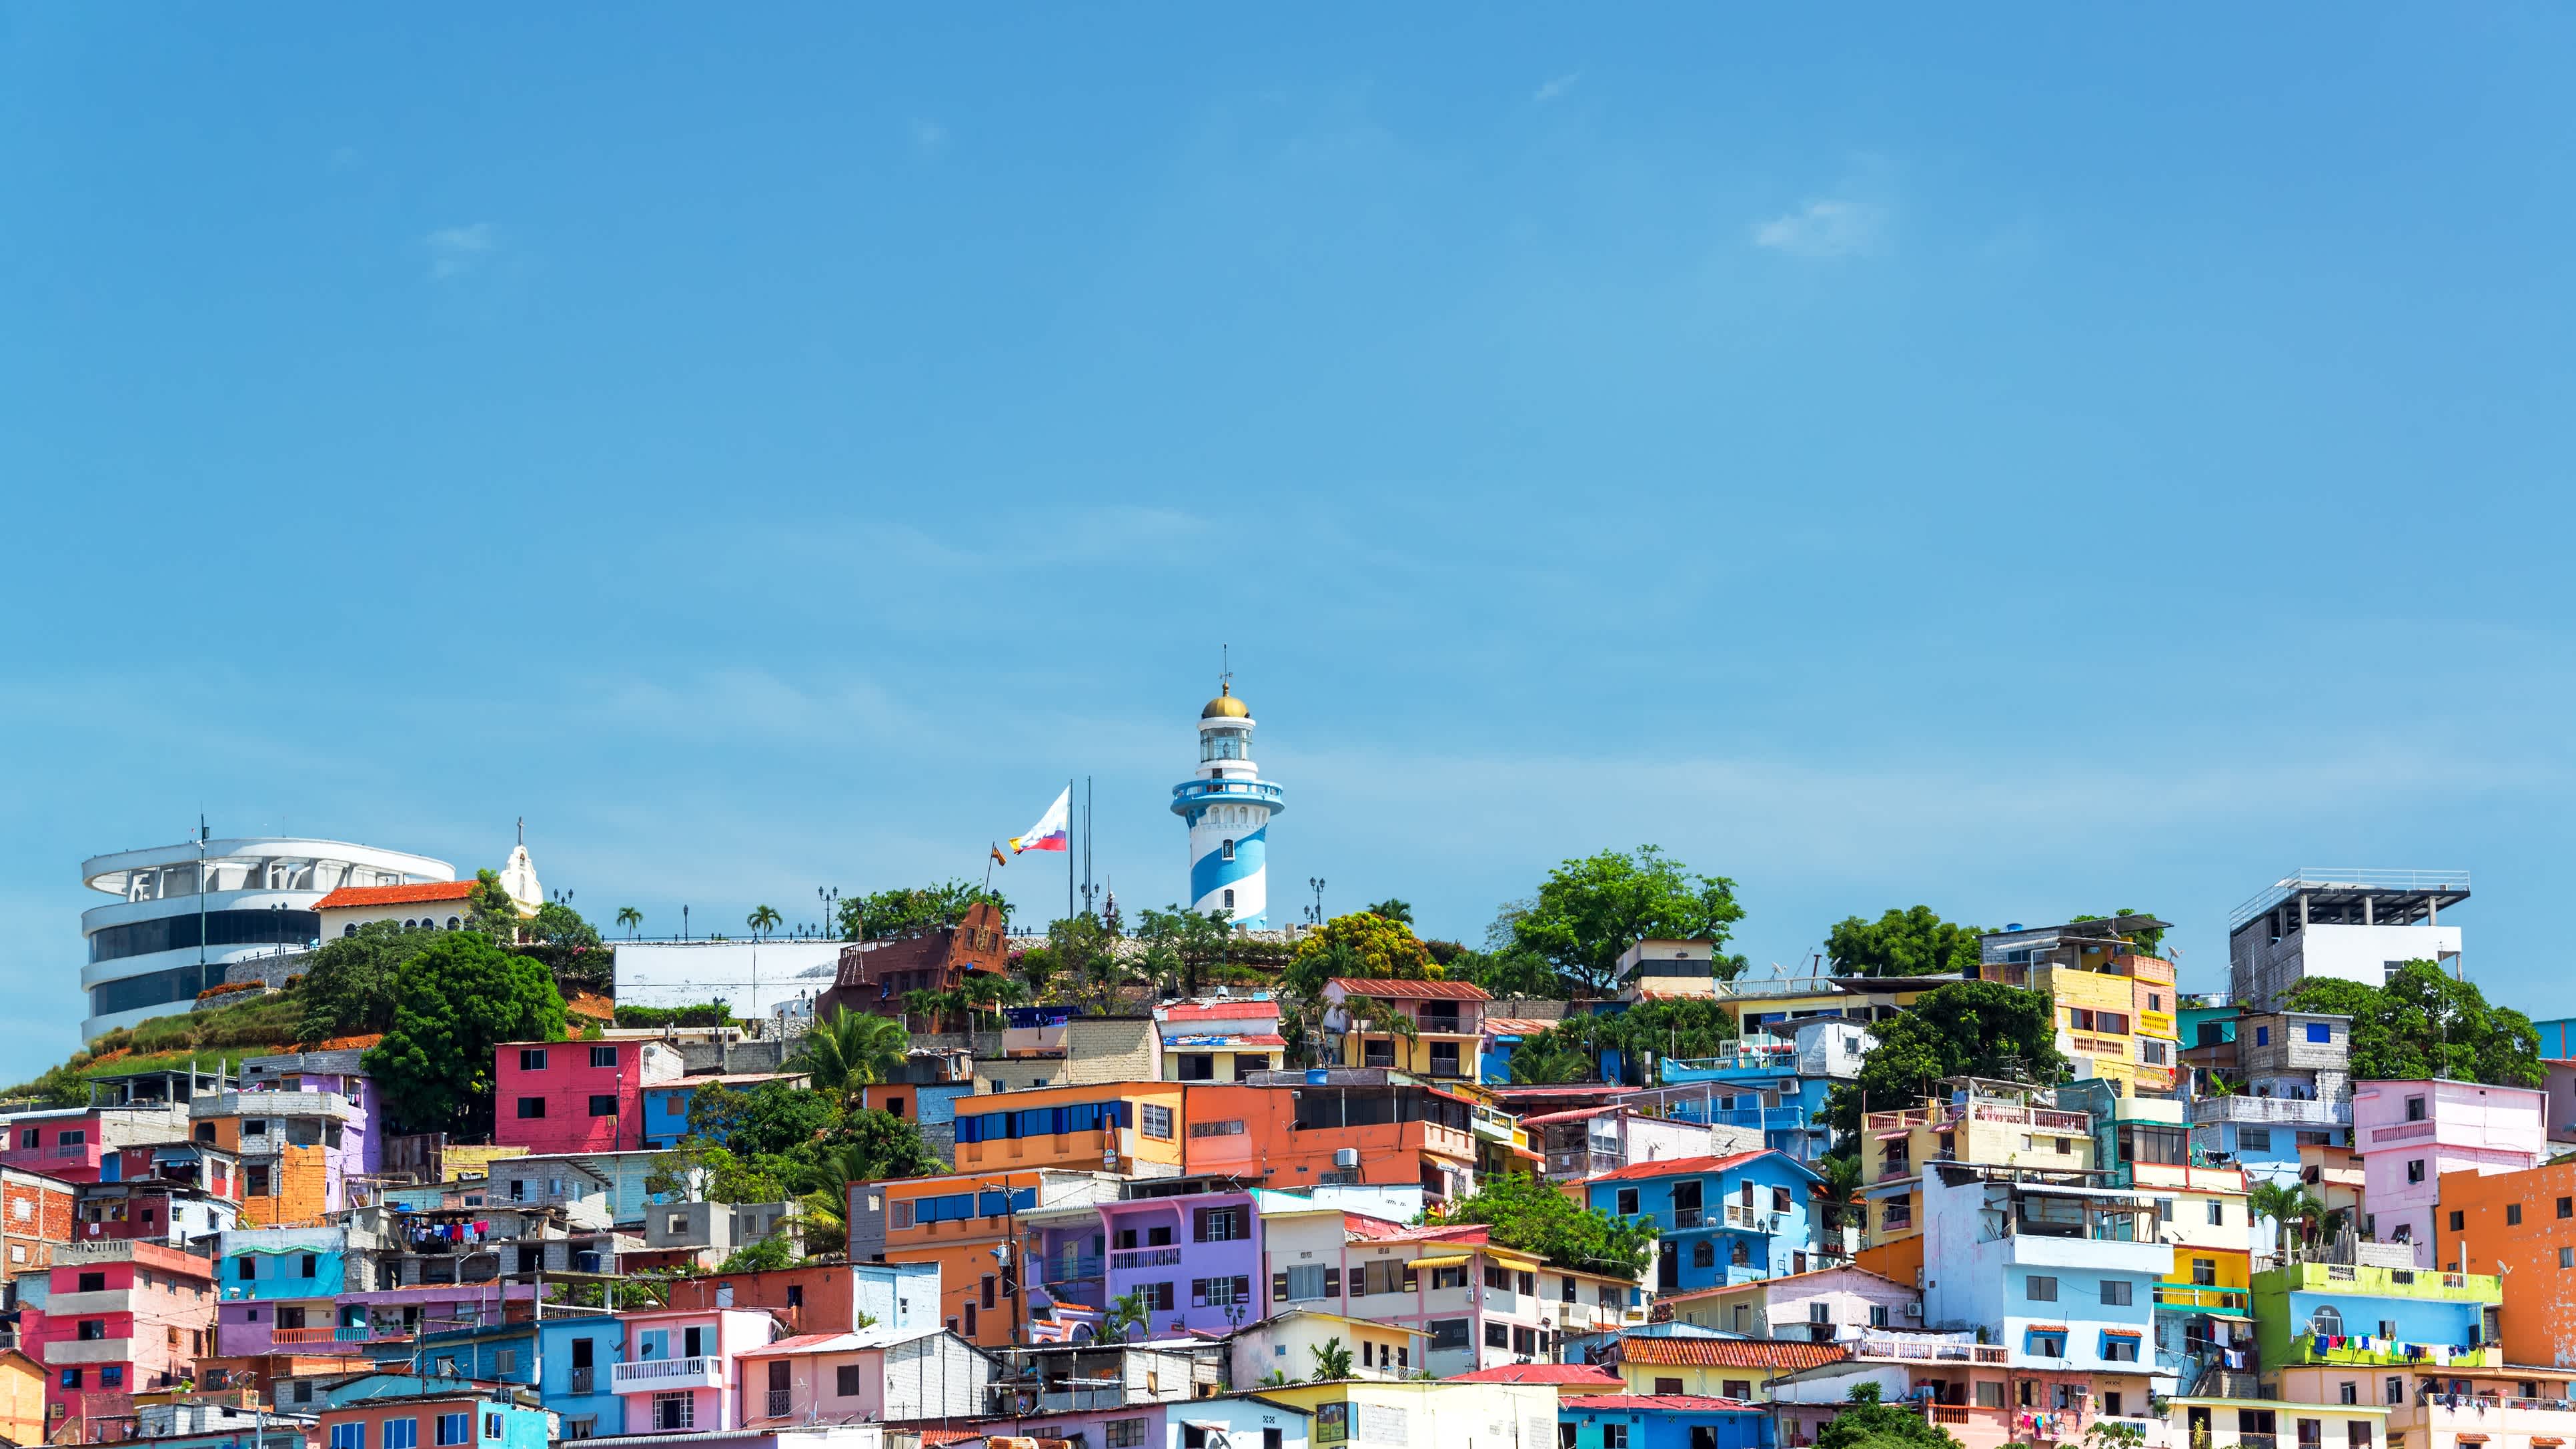 De_Santa_Ana_heuvel_in_Guayaquil_Ecuador_met_kleurige_huizen